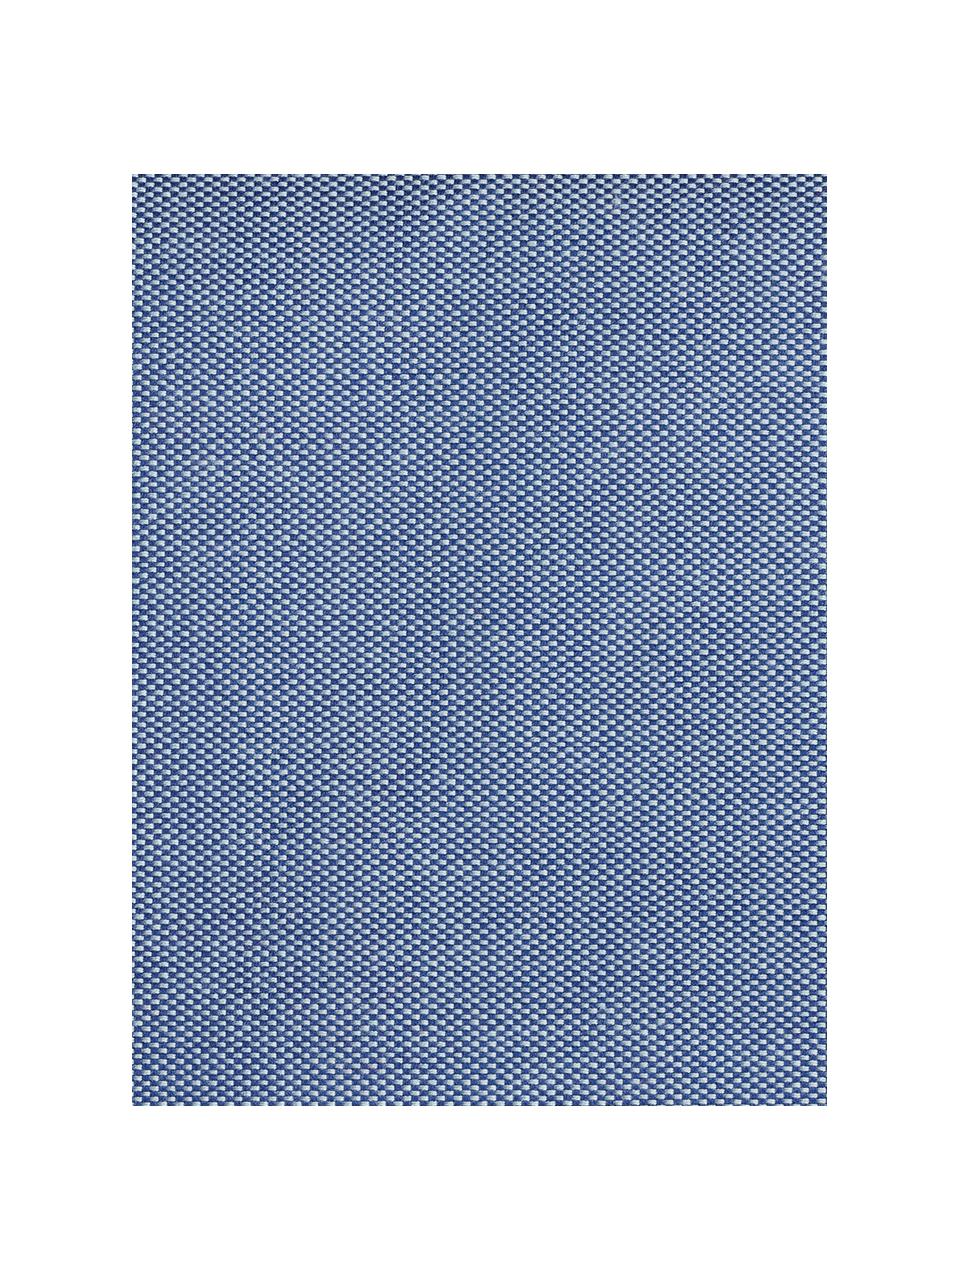 Interiérový a exteriérový sedací vak Dotcom, Modrá, Ø 60 cm, V 40 cm